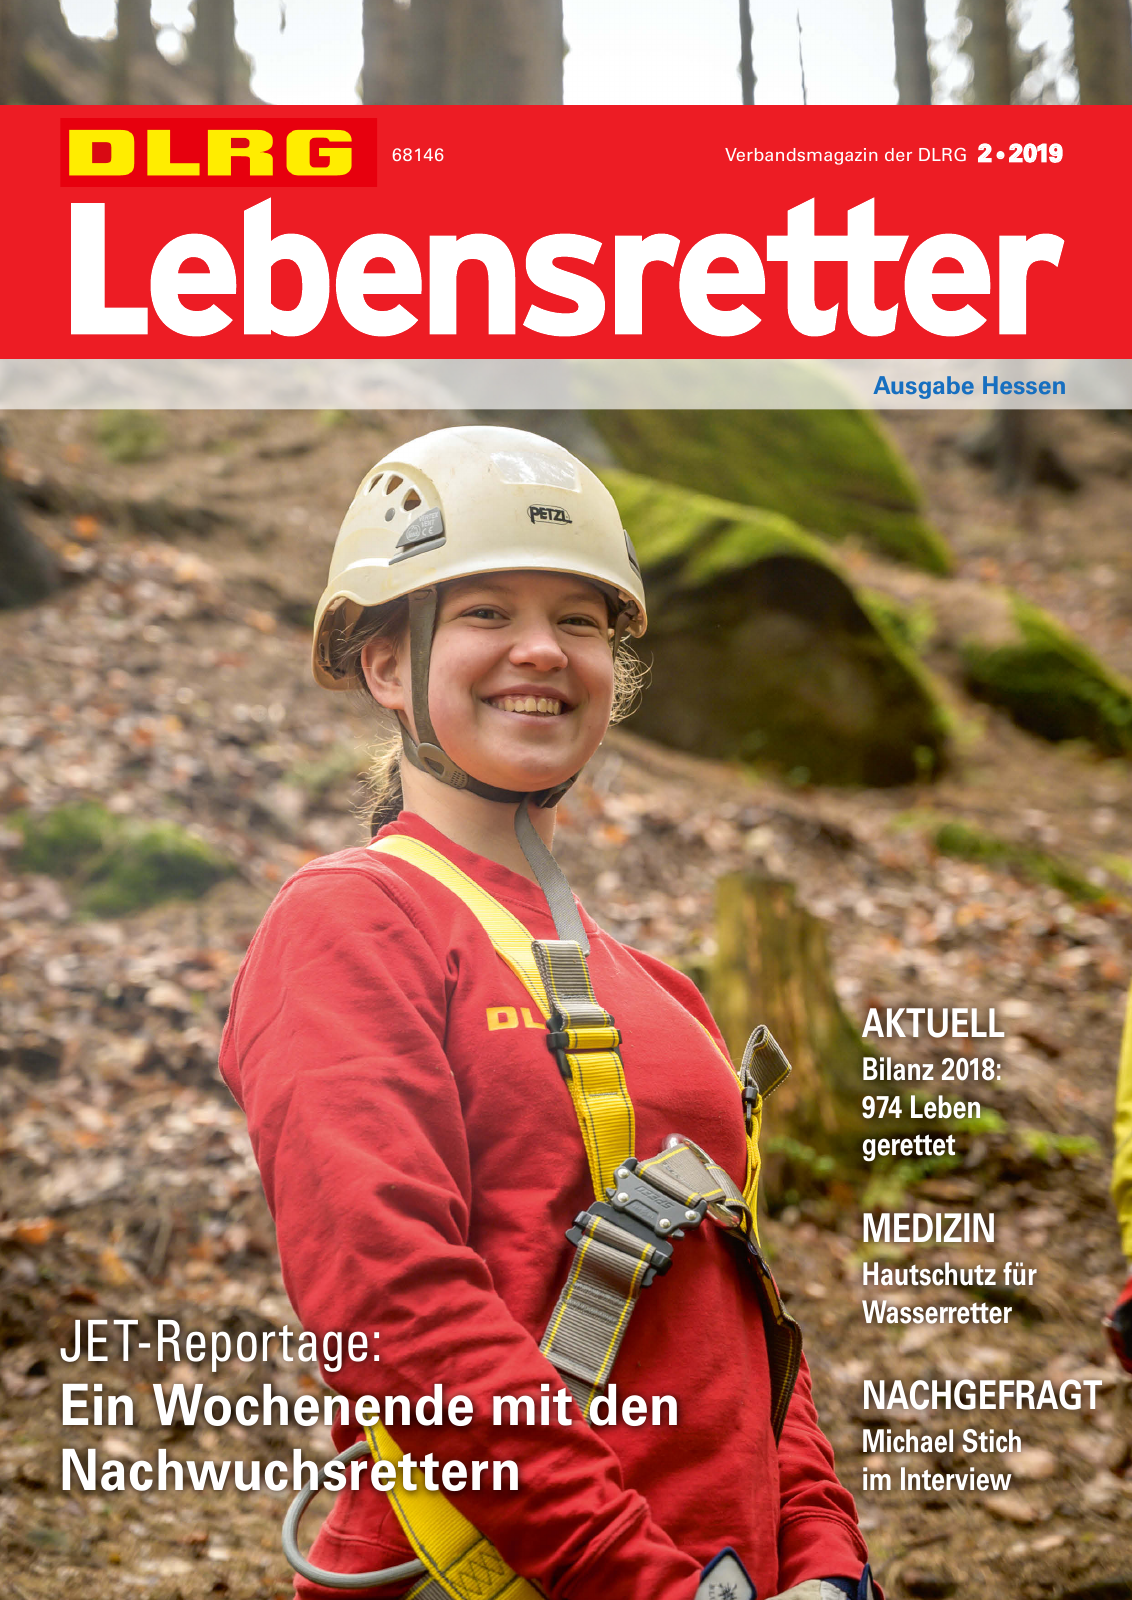 Vorschau Lebensretter 2/2019 - Hessen Regionalausgabe Seite 1